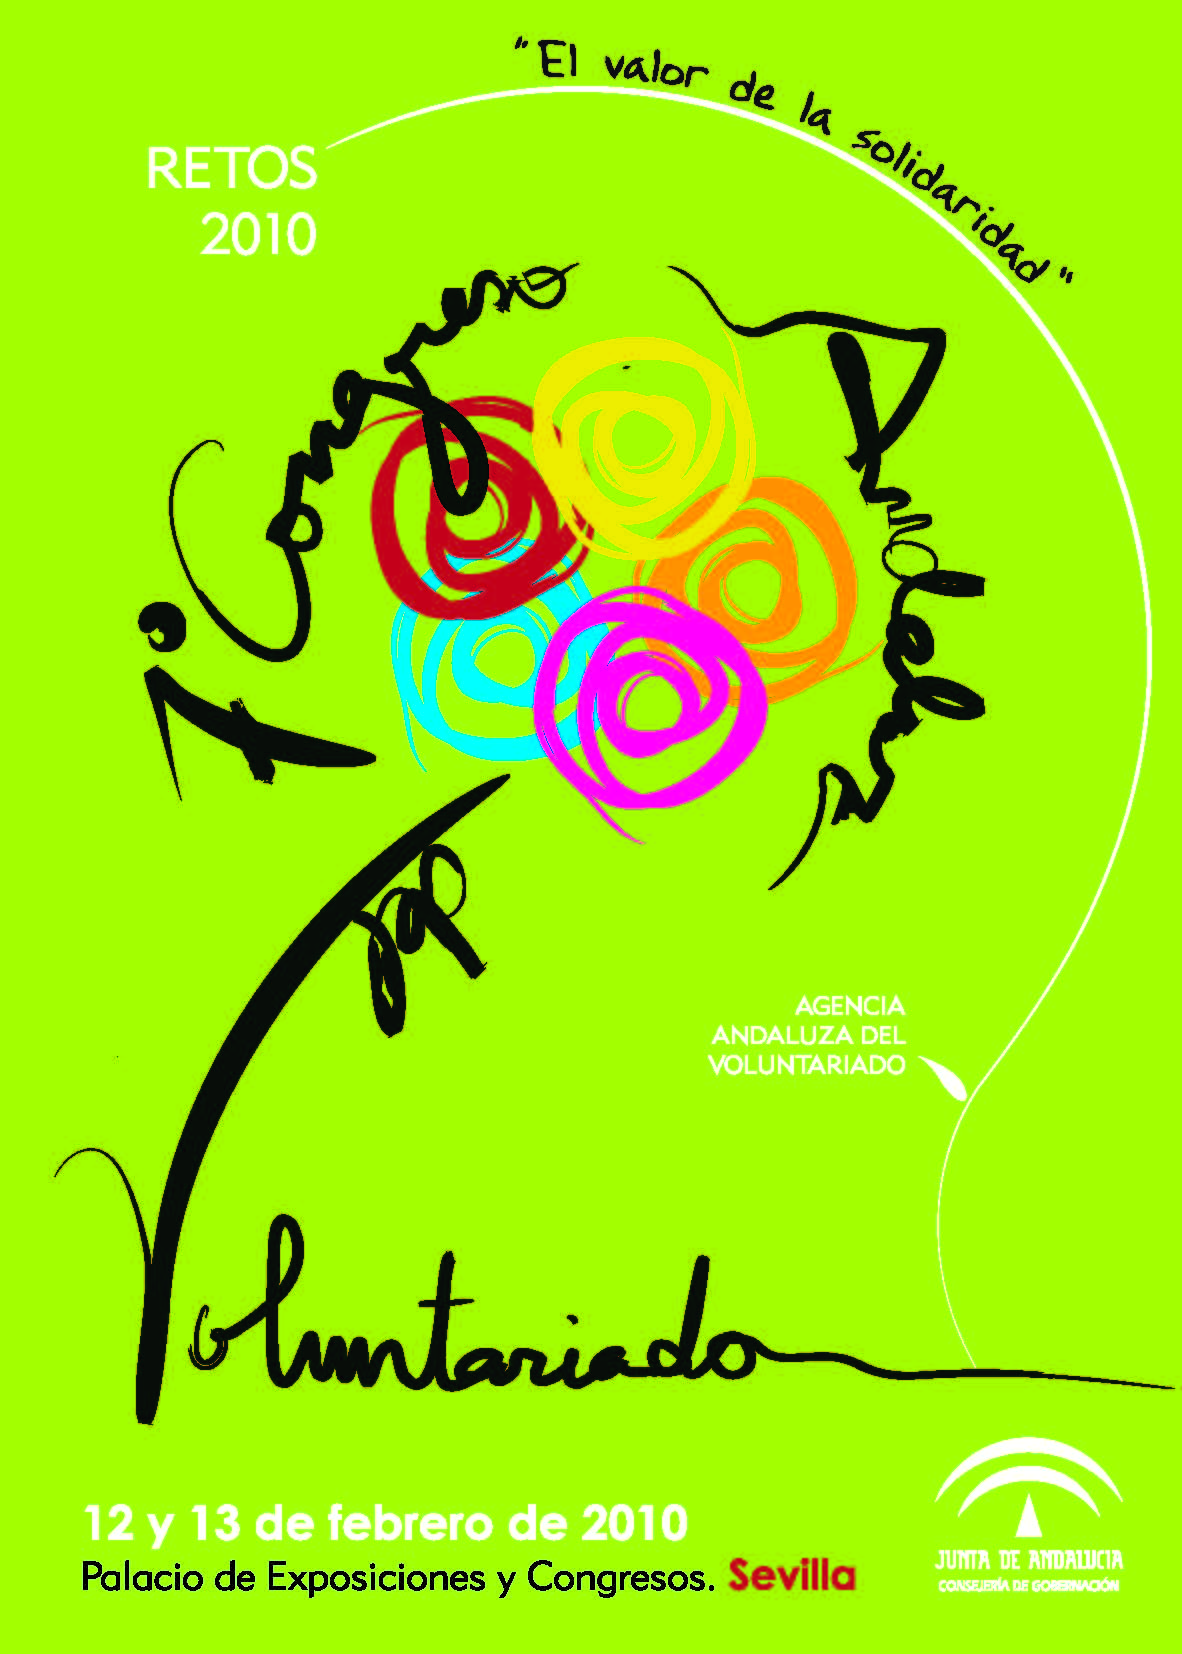 7 Congreso Andaluz del Voluntariado: Retos 2010